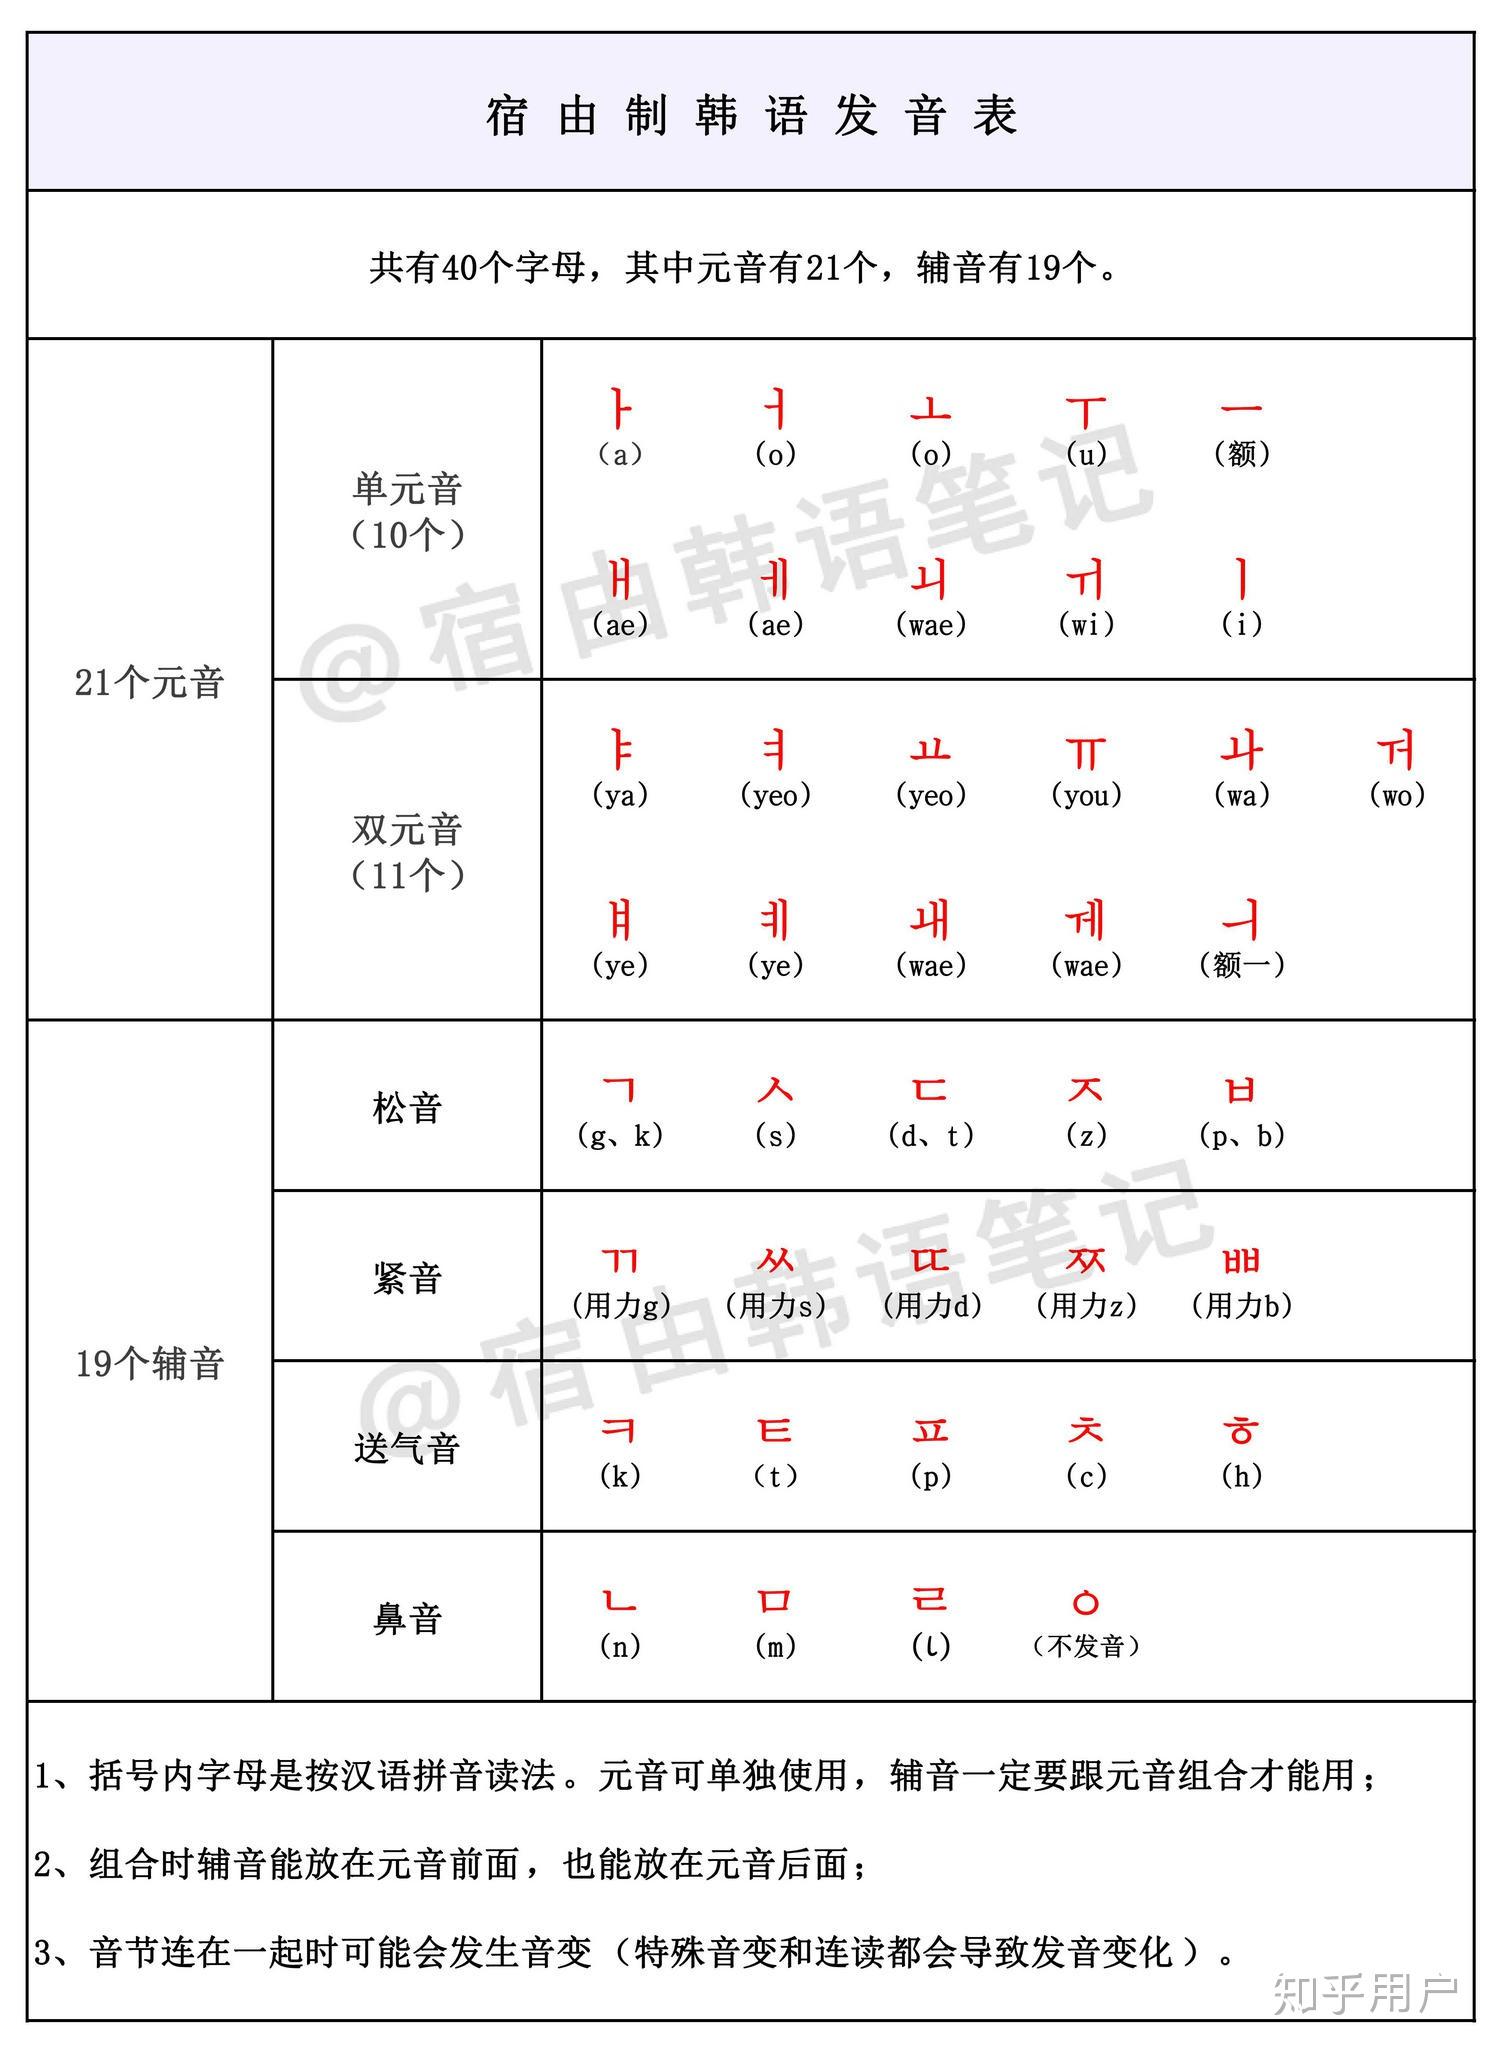 韩国语音标表_文档下载